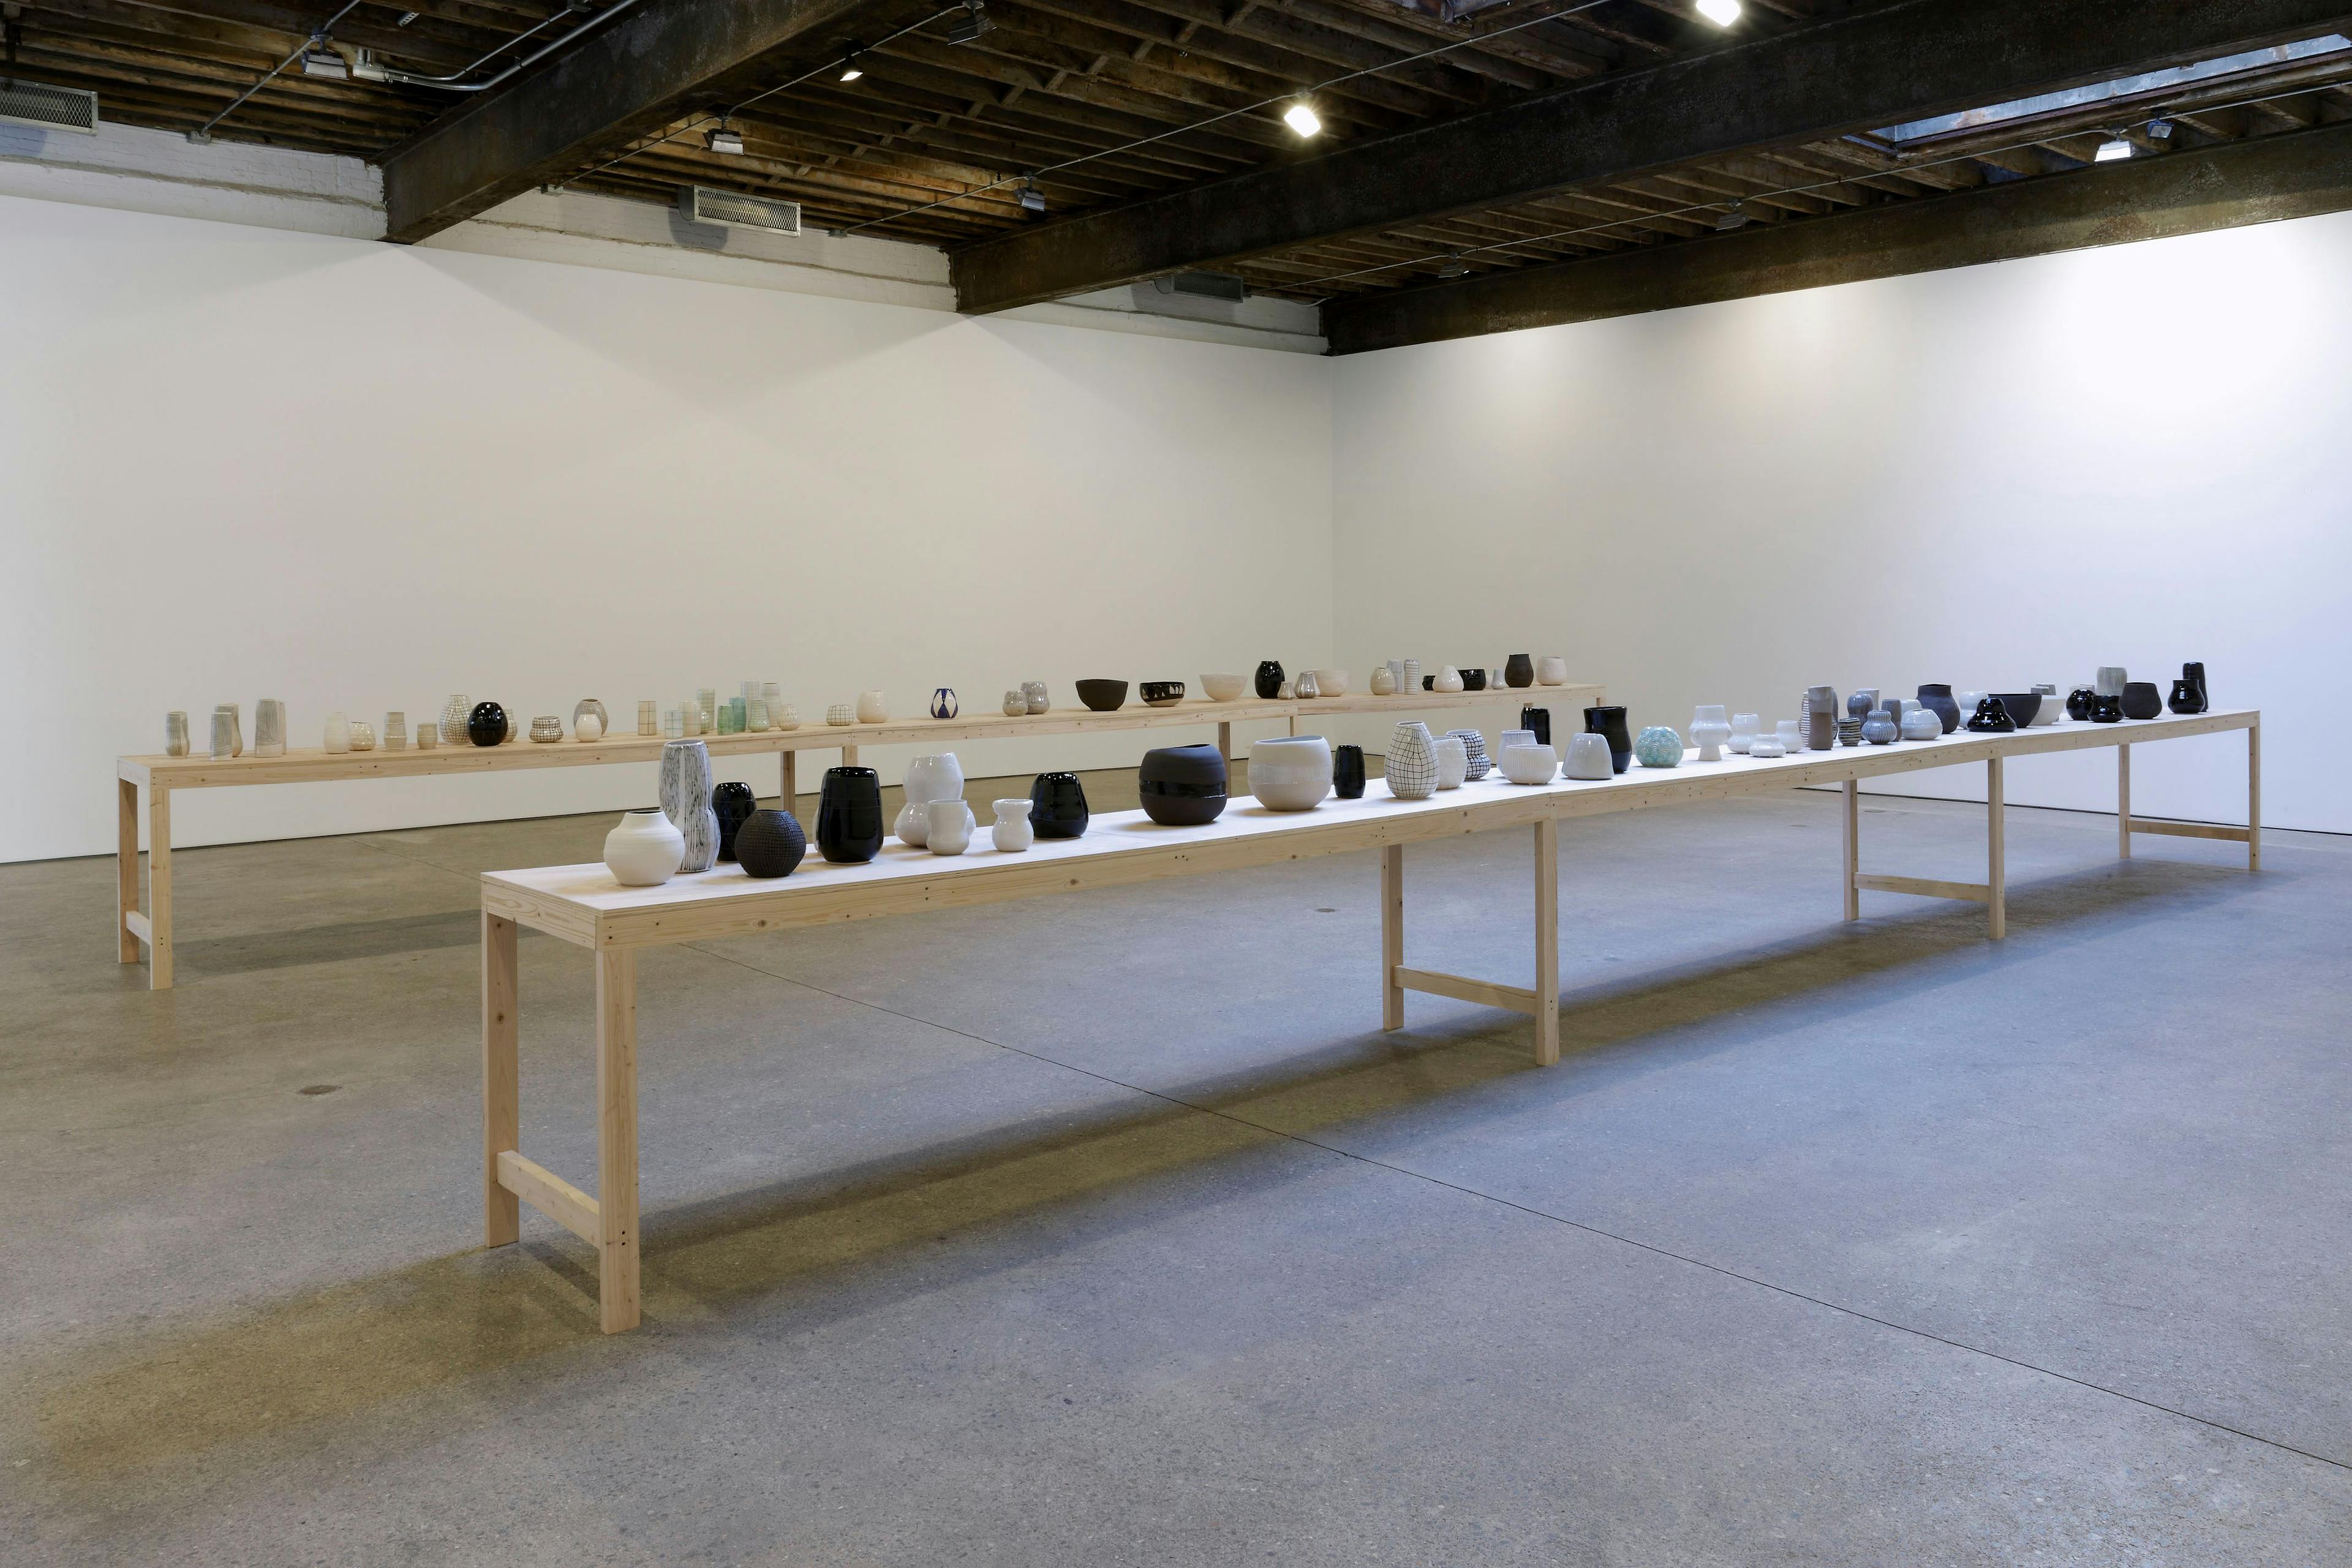 Installation view, Shio Kusaka, at Anton Kern Gallery in New York, dated 2010.